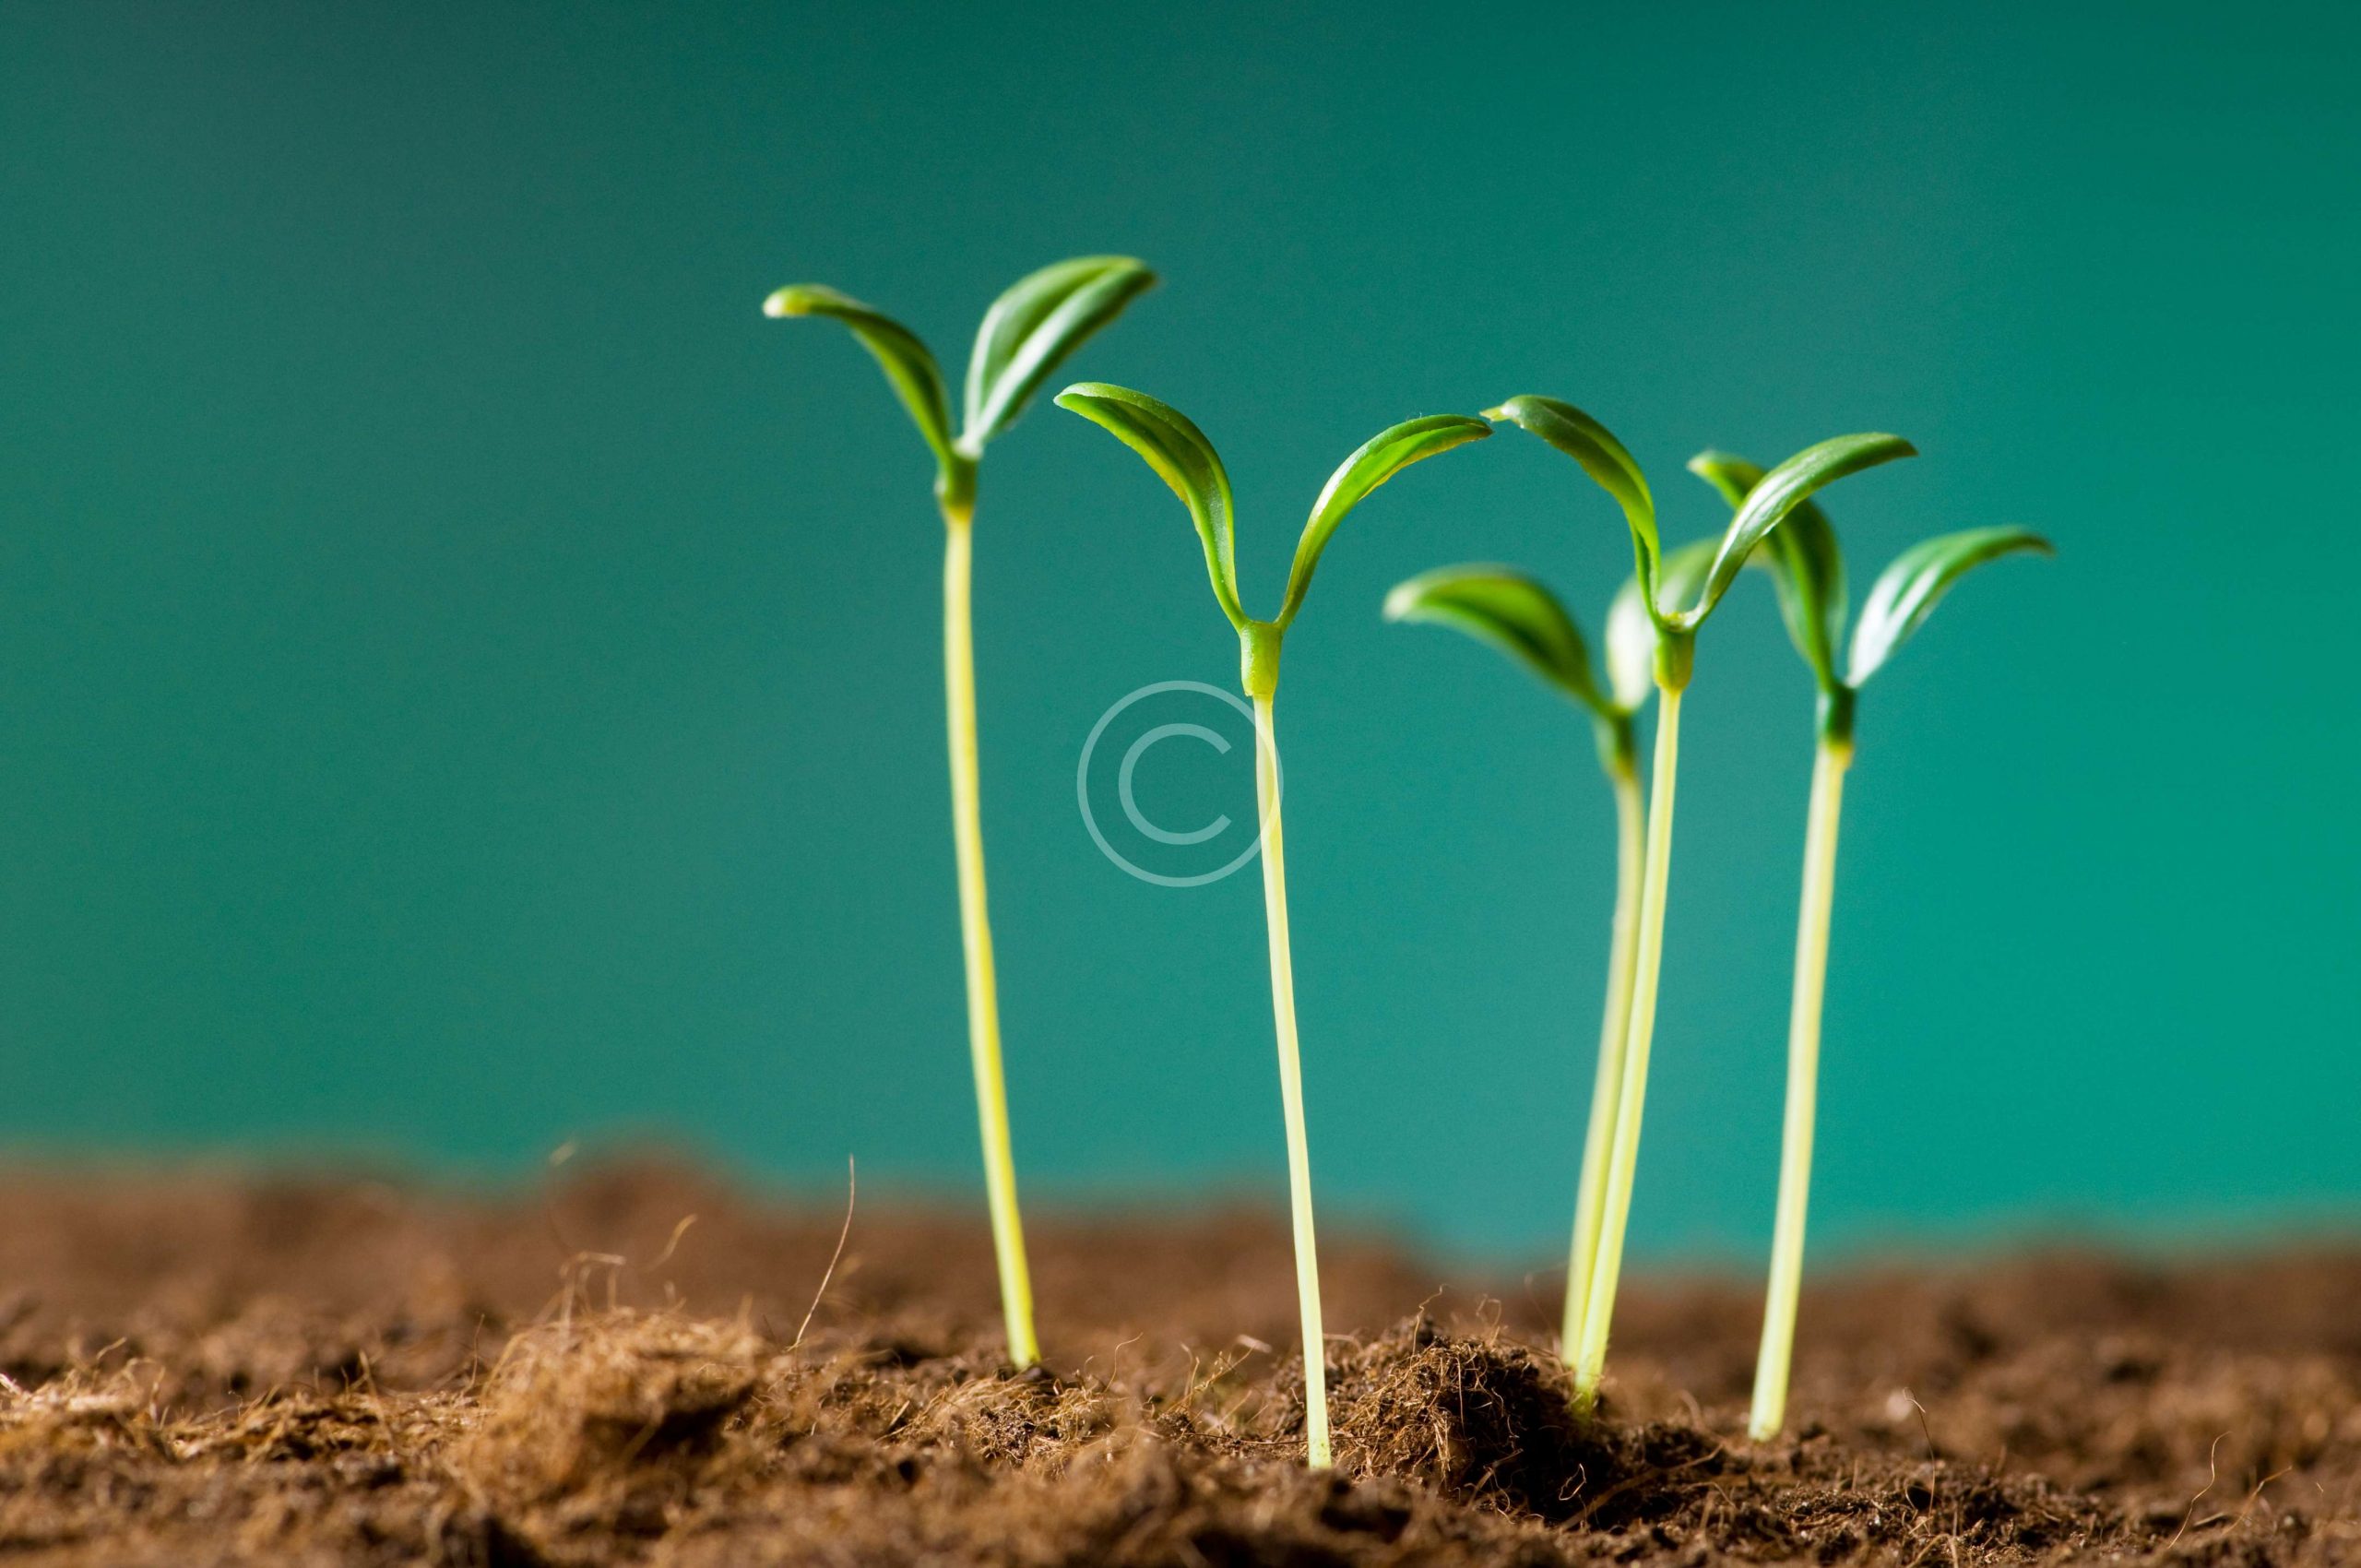 bigstock-Green-seedling-illustrating-co-14319230-scaled.jpg